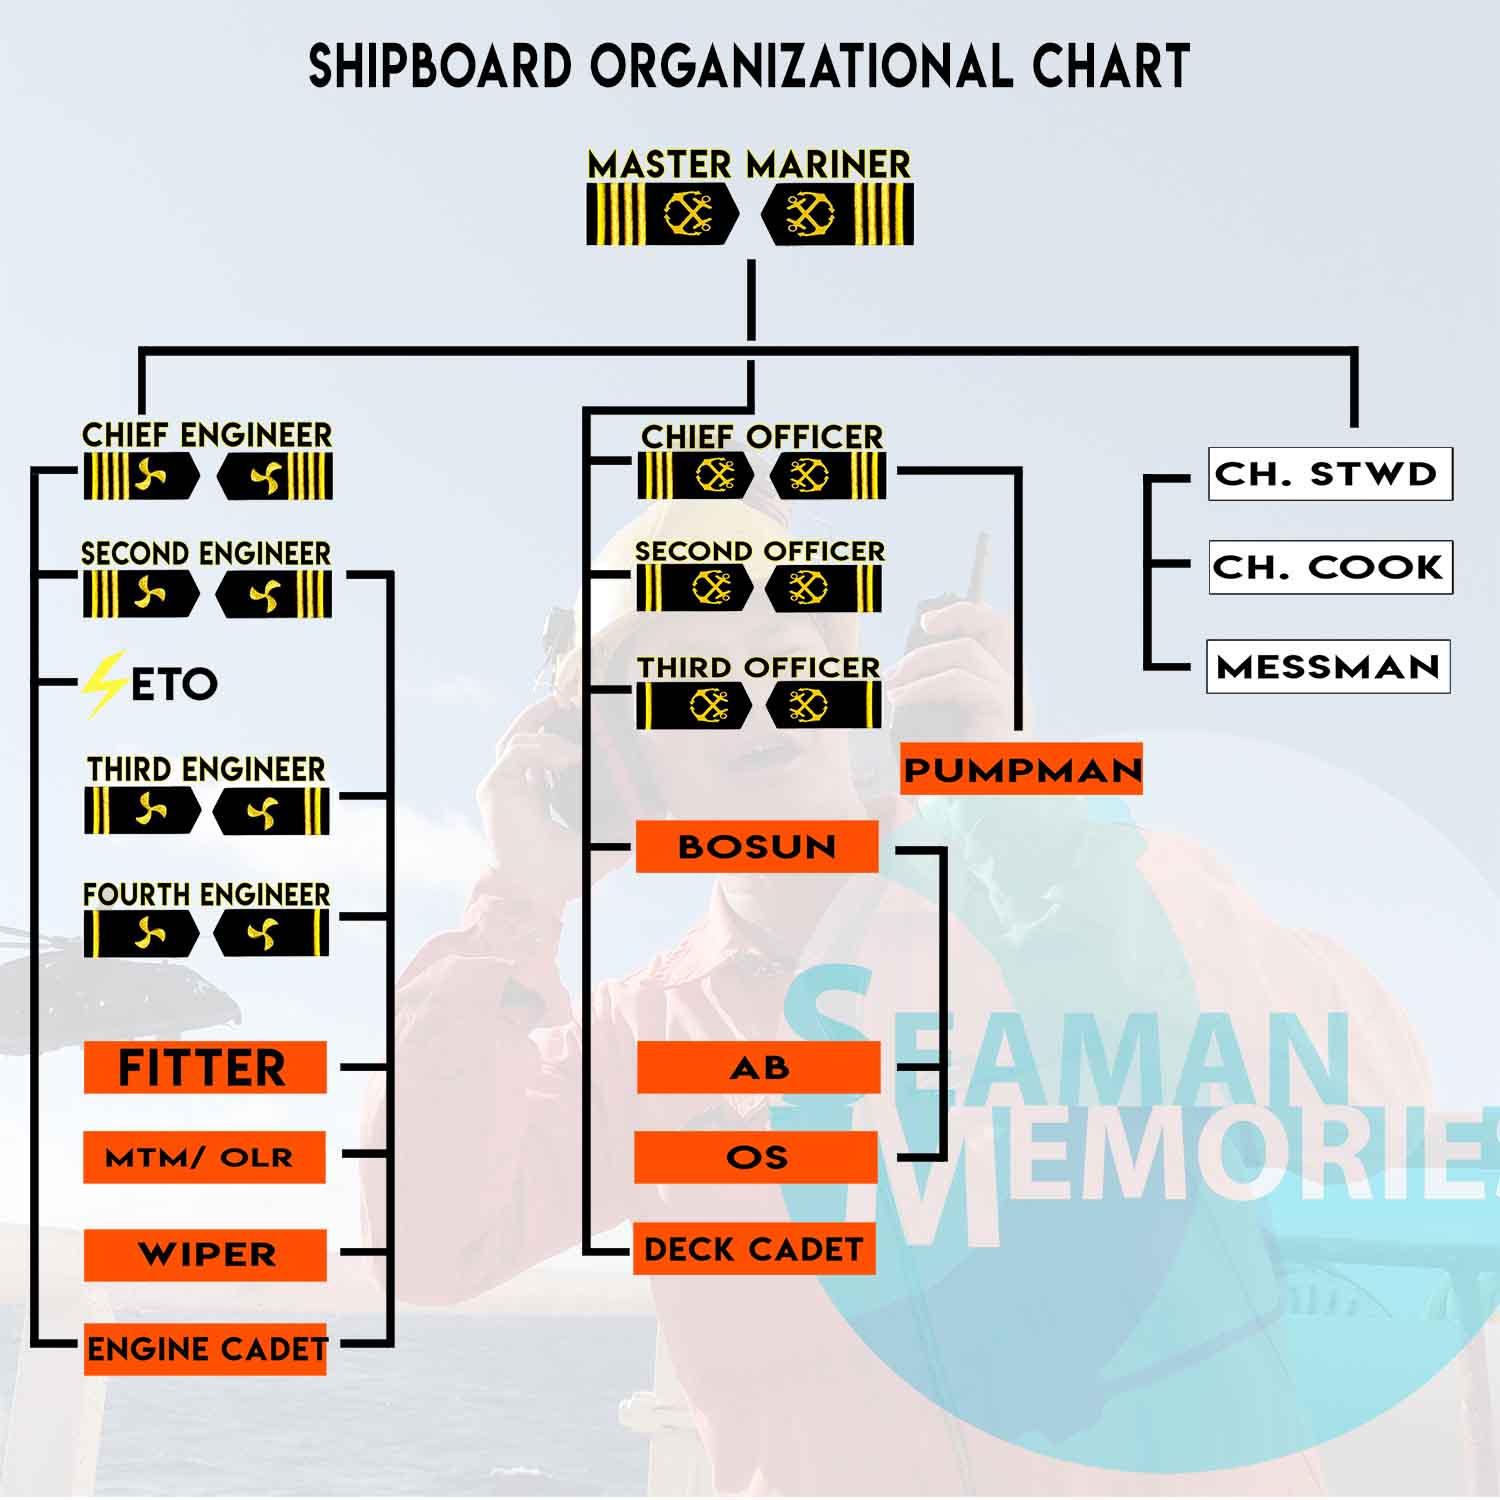 Shipboard Organization structure